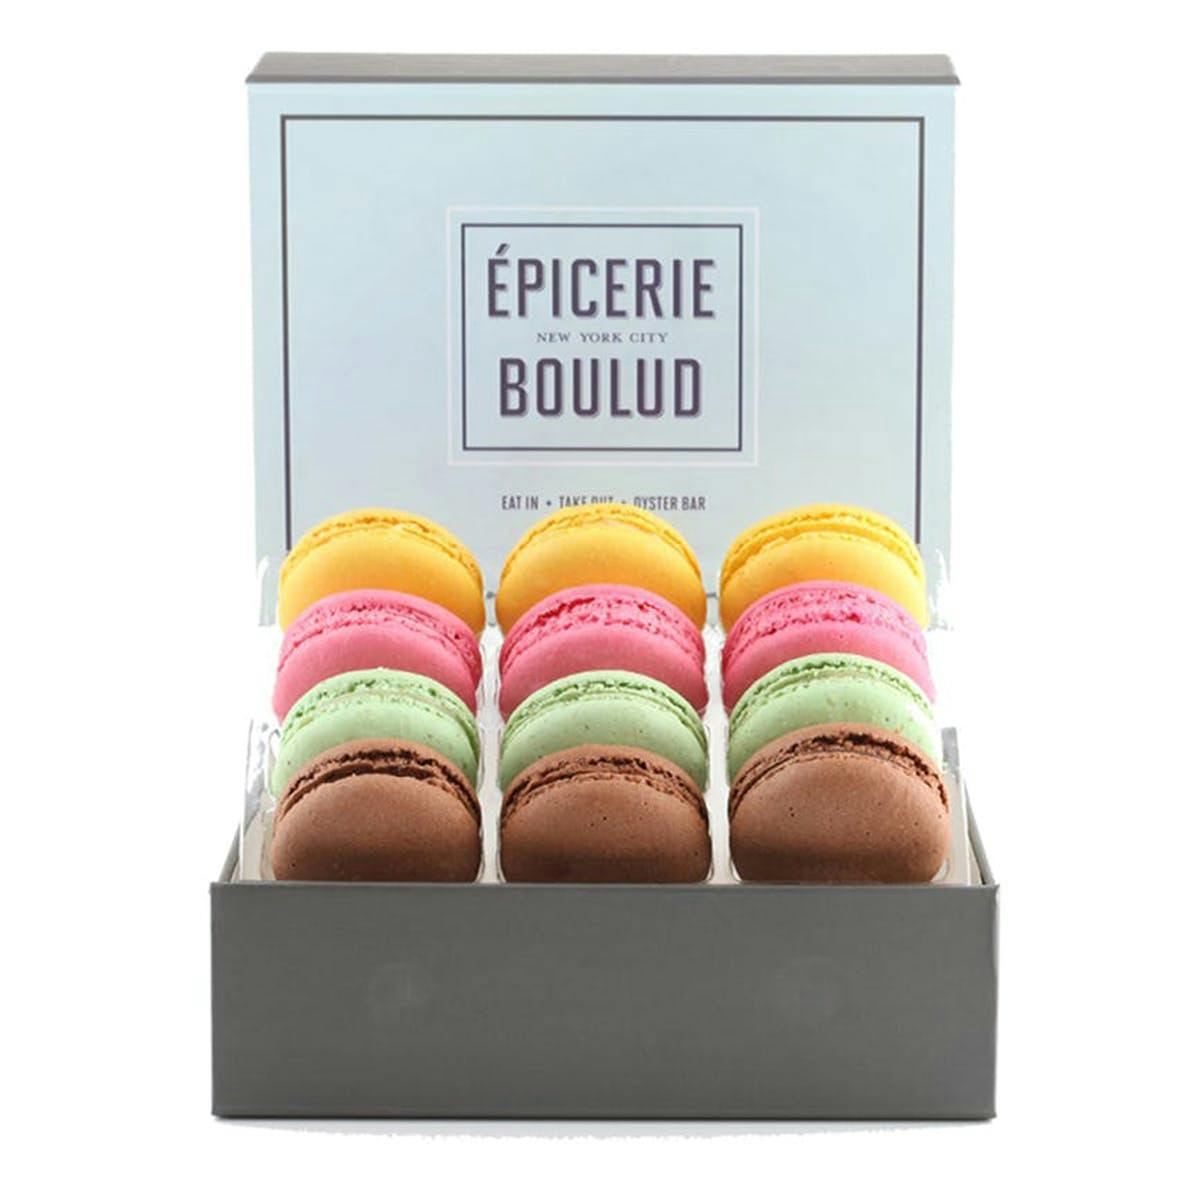 Epicerie Boulud Macarons